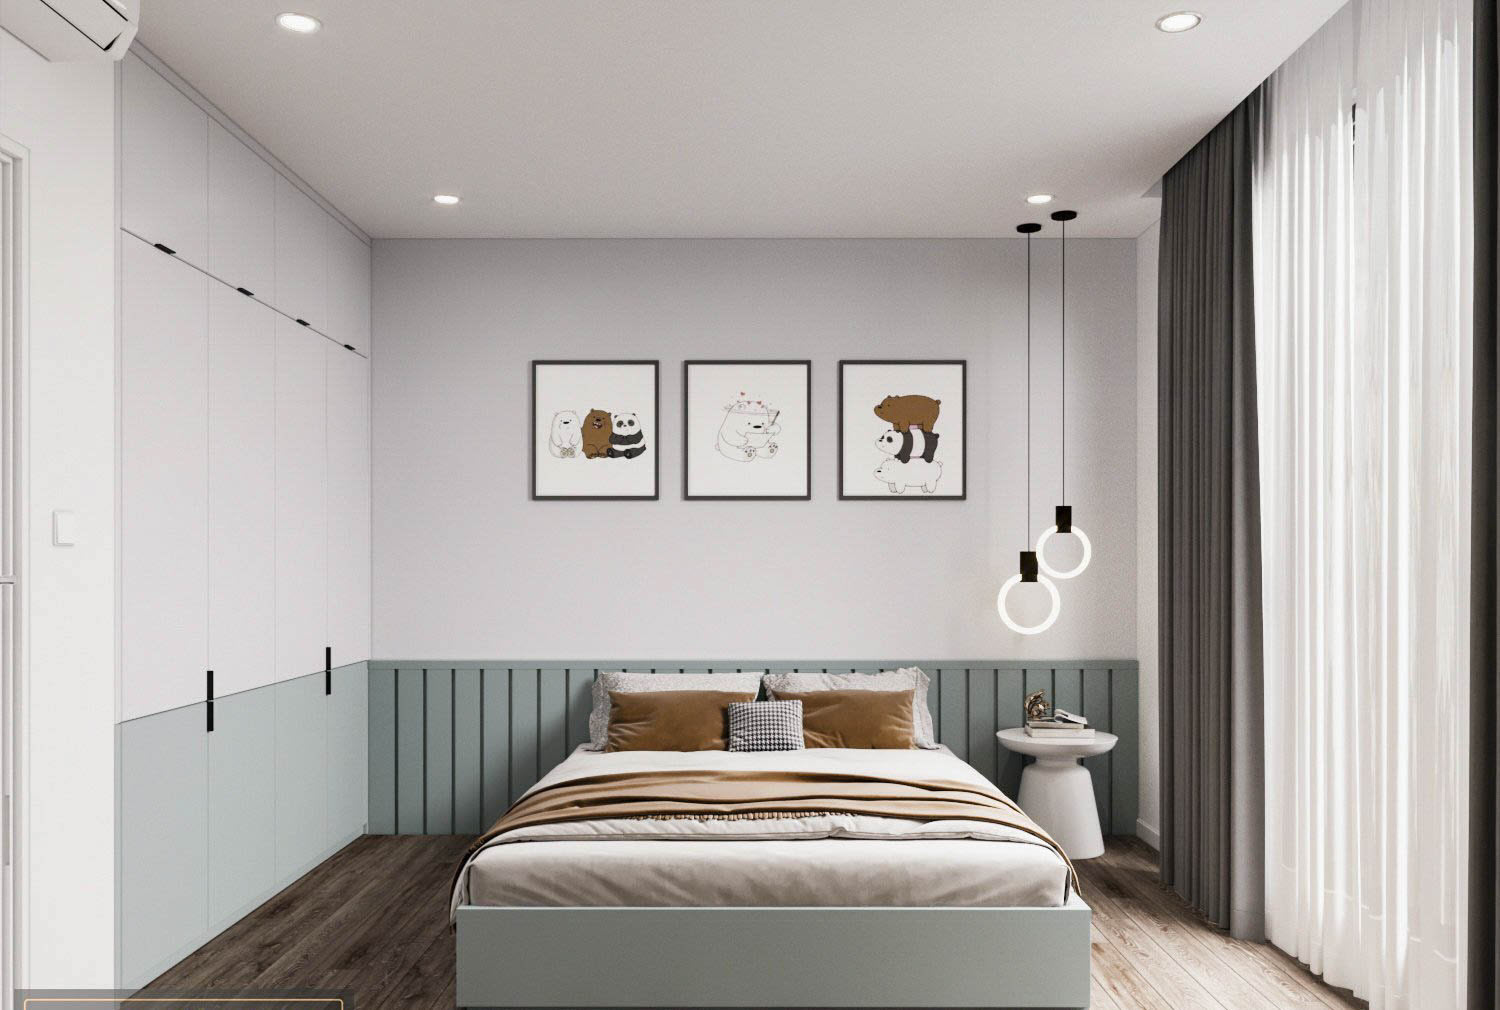 hình ảnh phòng ngủ với tranh treo tường fđầu giường ấn tượng